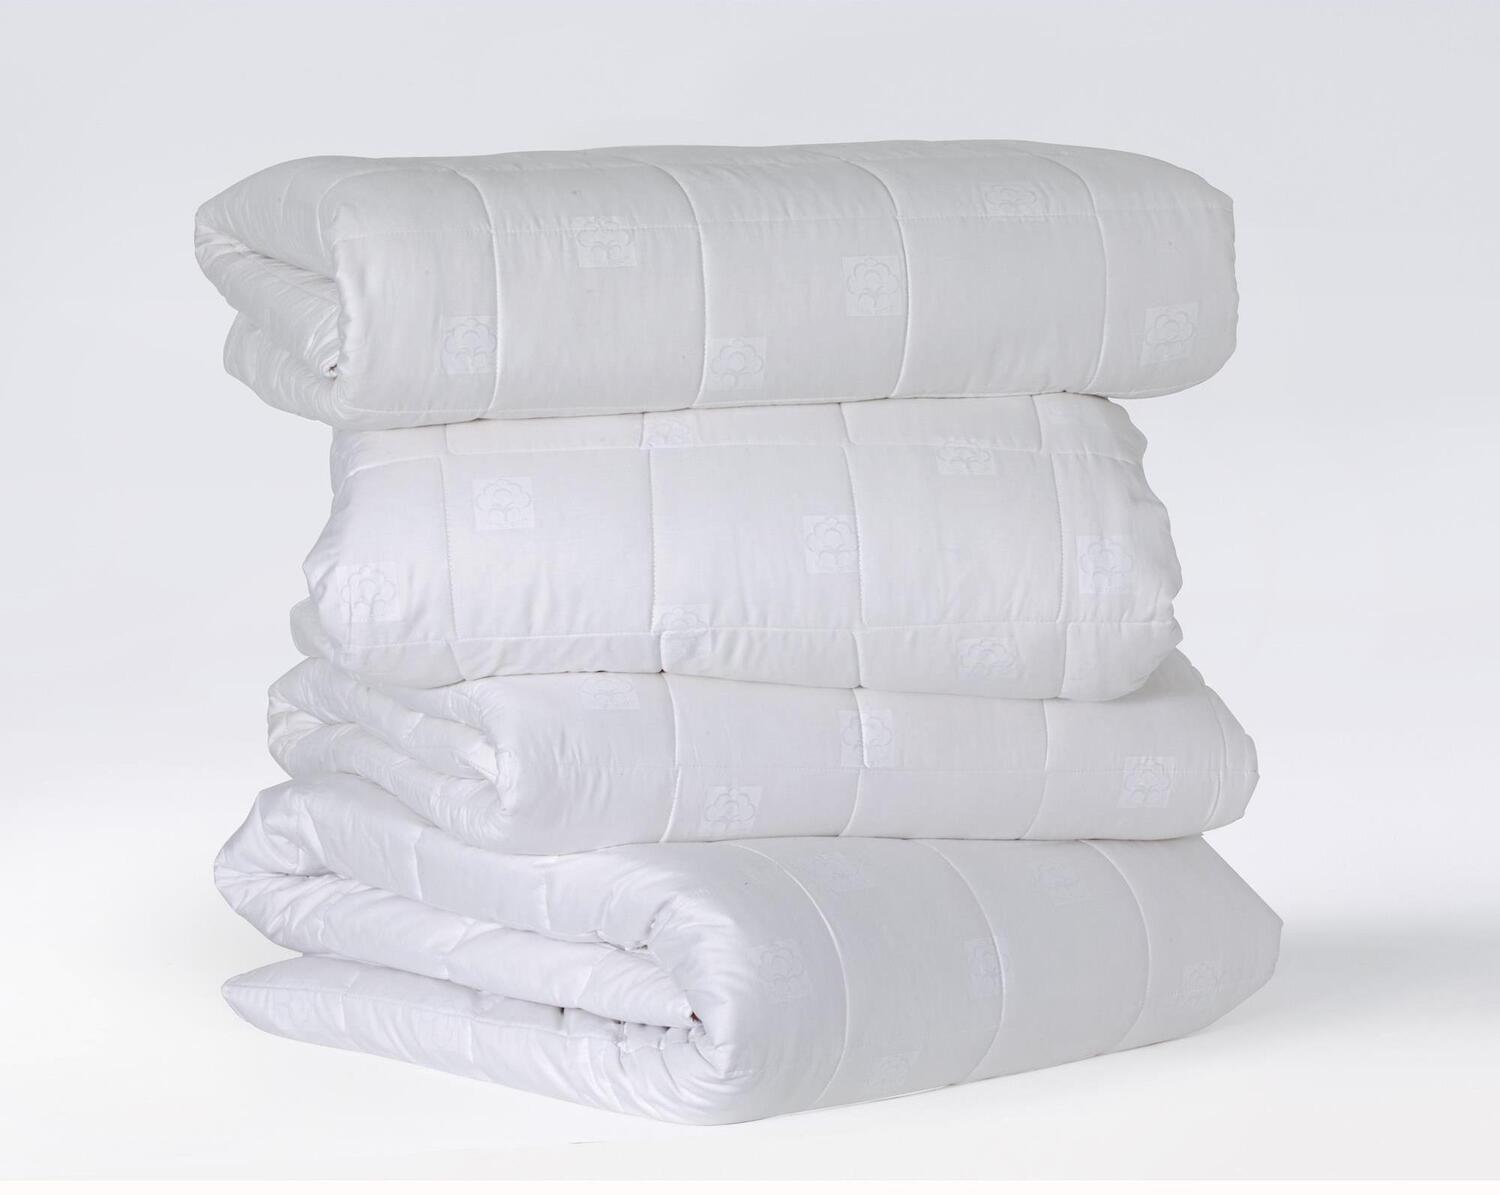 Одеяло Всесезонное Cotton soft цвет: белый (155х215 см), размер 155х215 см tac847805 Одеяло Всесезонное Cotton soft цвет: белый (155х215 см) - фото 1